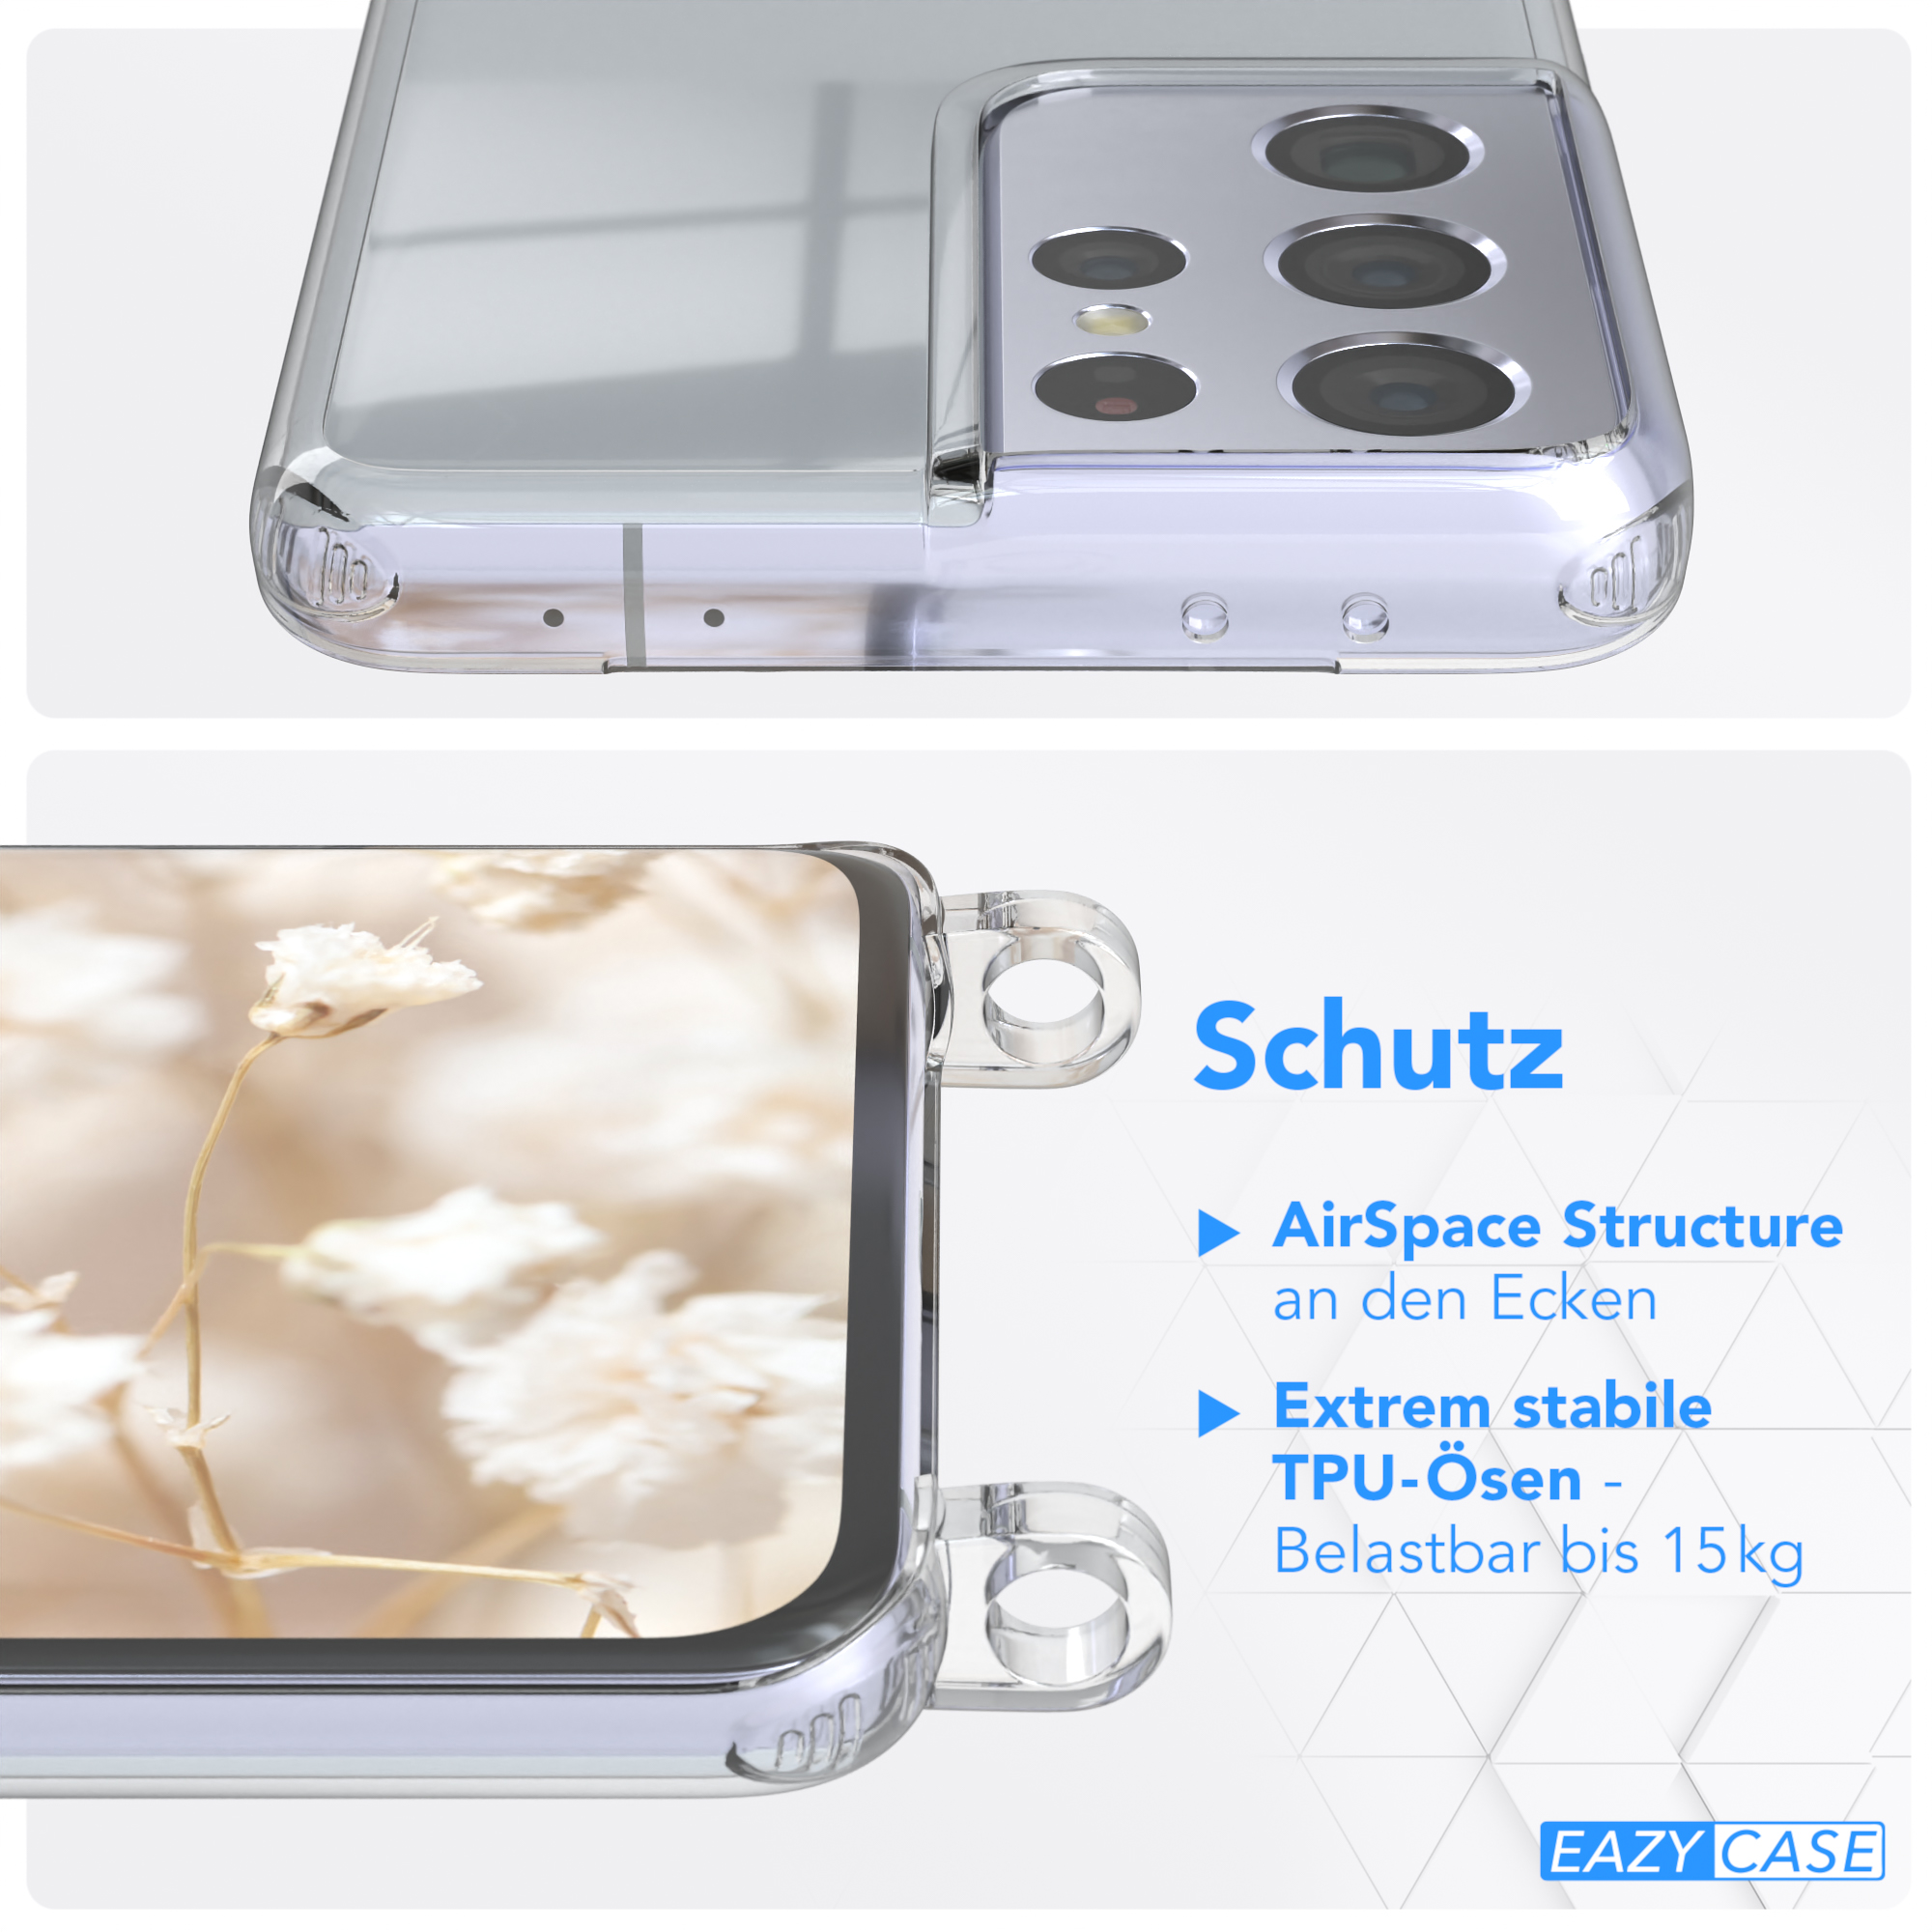 5G, Samsung, Umhängetasche, Ultra mit Mix CASE EAZY Kordel Style, S21 Galaxy Handyhülle Transparente Boho Braun